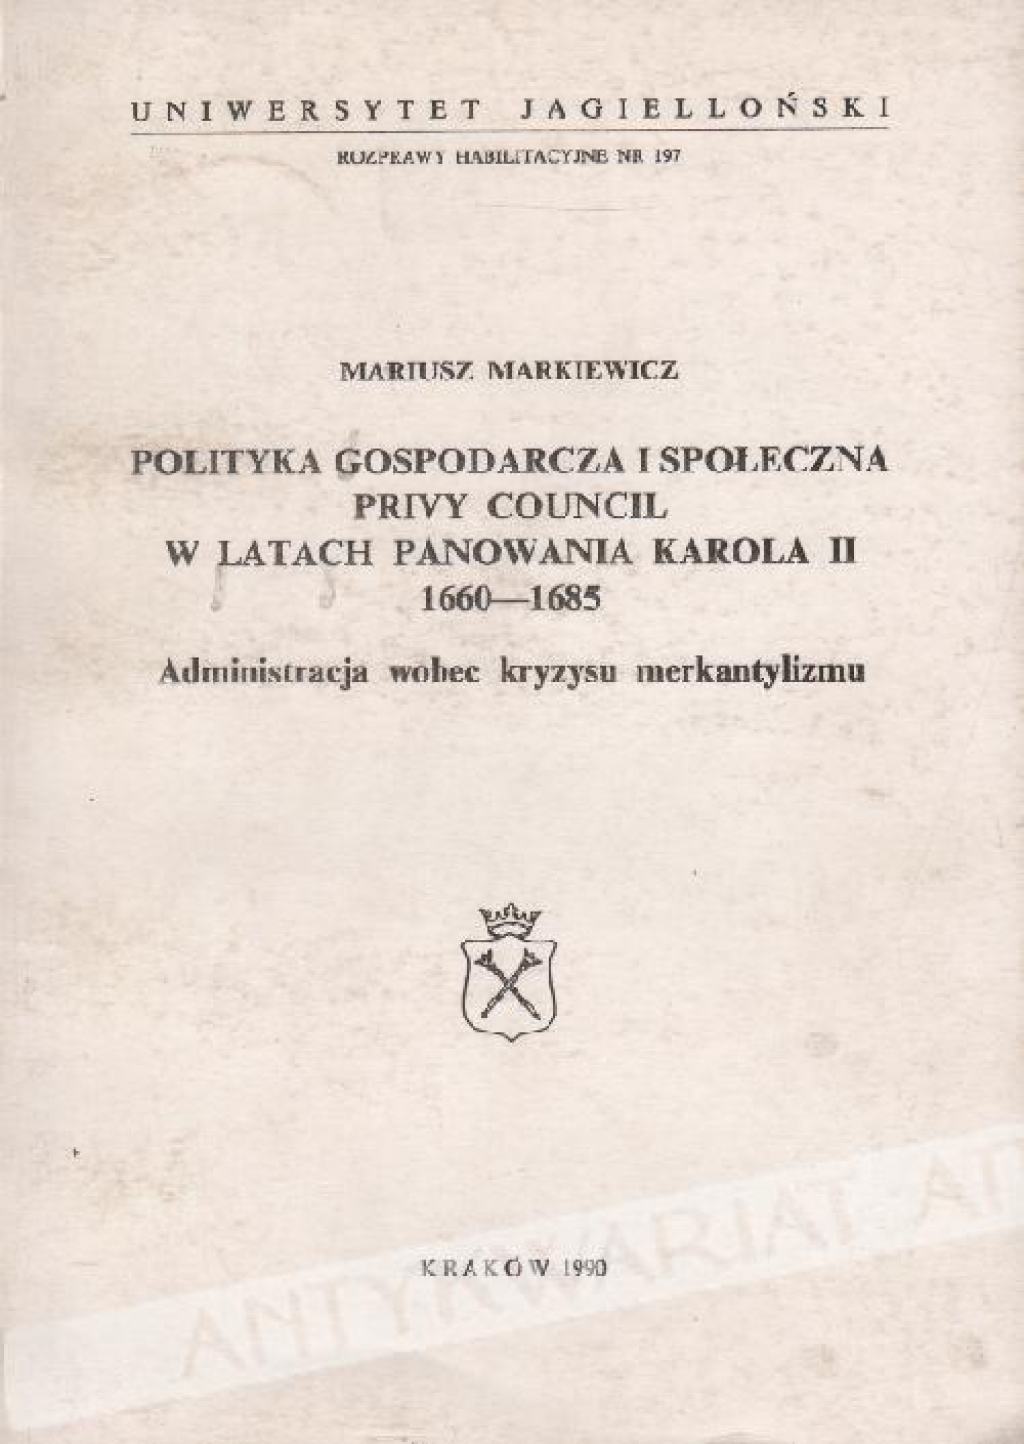 Polityka gospodarcza i społeczna \"privy council\" w latach panowania Karola II 1660 - 1685. Administracja wobec kryzysu merkantylizmu